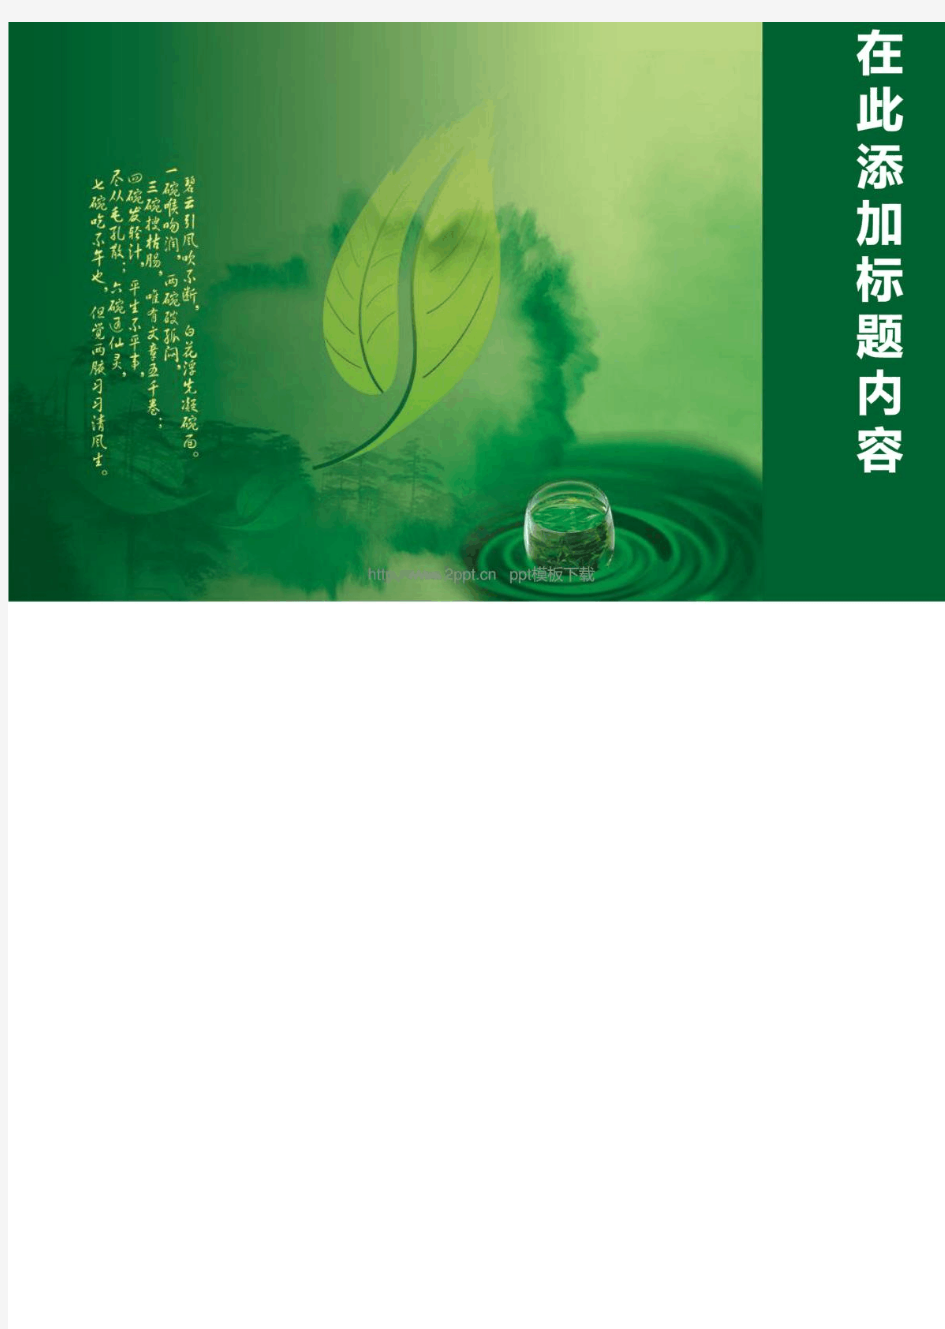 中国传统茶文化PPT模板